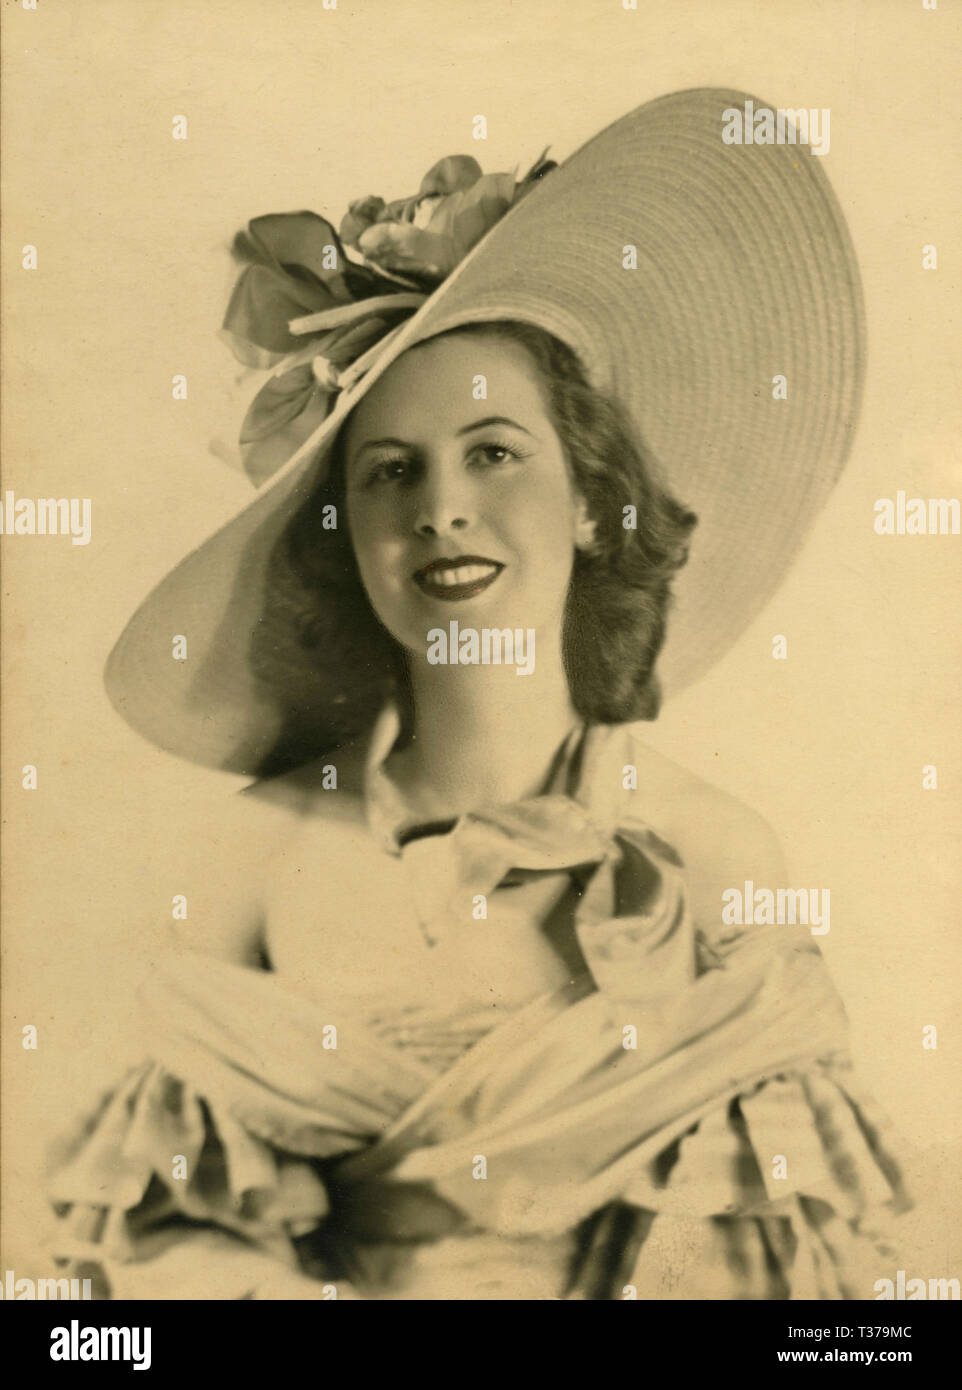 Ritratto di attrice Ruby Dalma con grandi hat, Italia 1940s Foto Stock